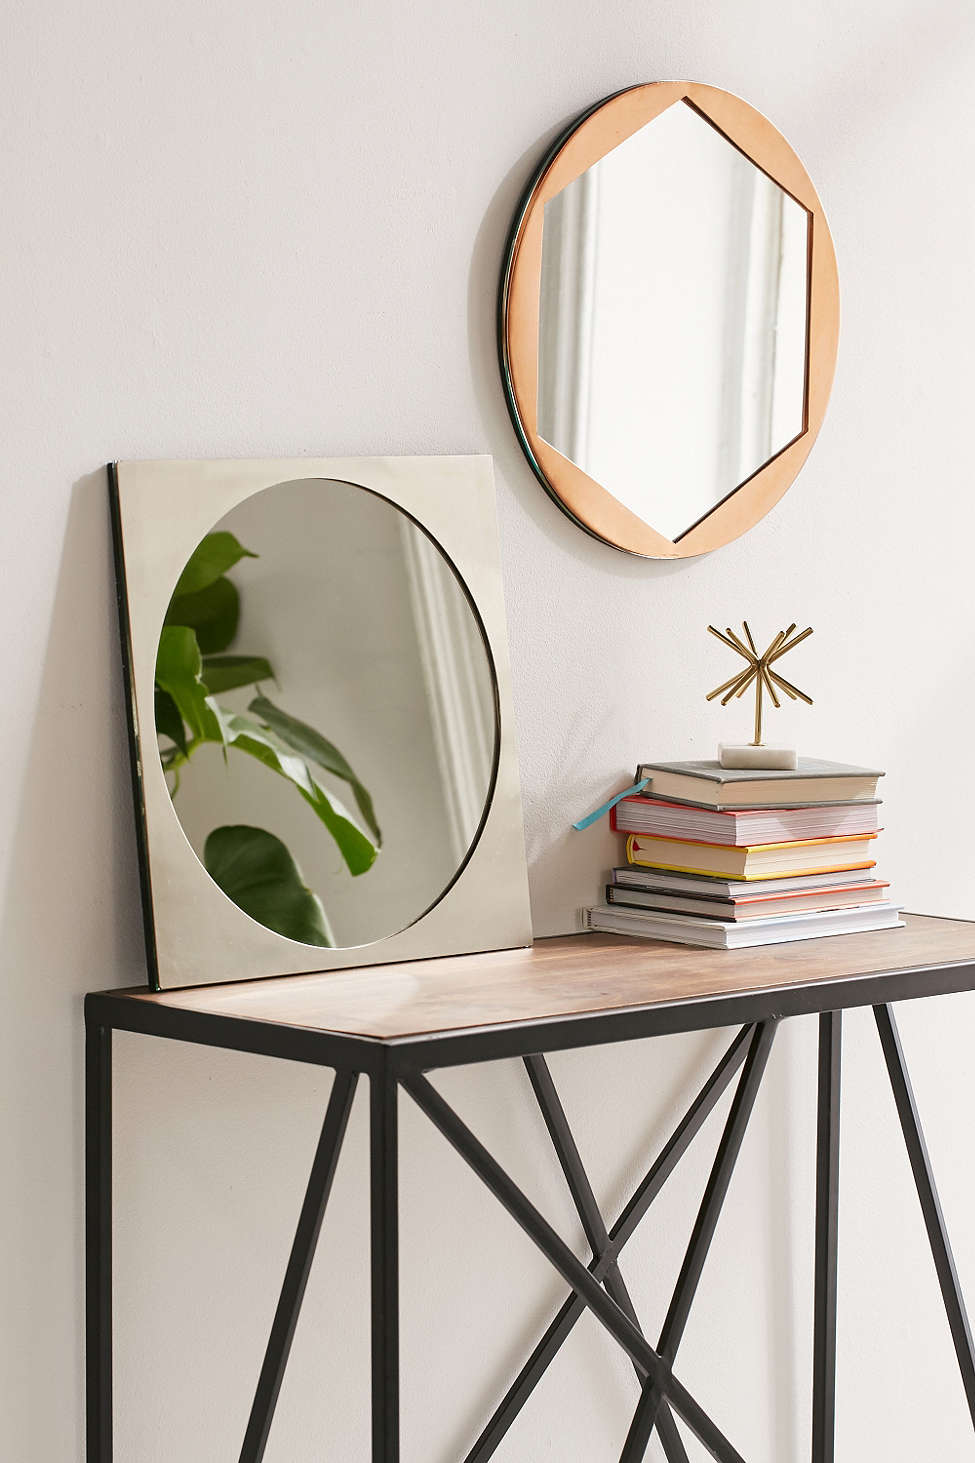 hình ảnh mẫu gương tròn đặt trên bàn dựa vào tường và gương treo tường